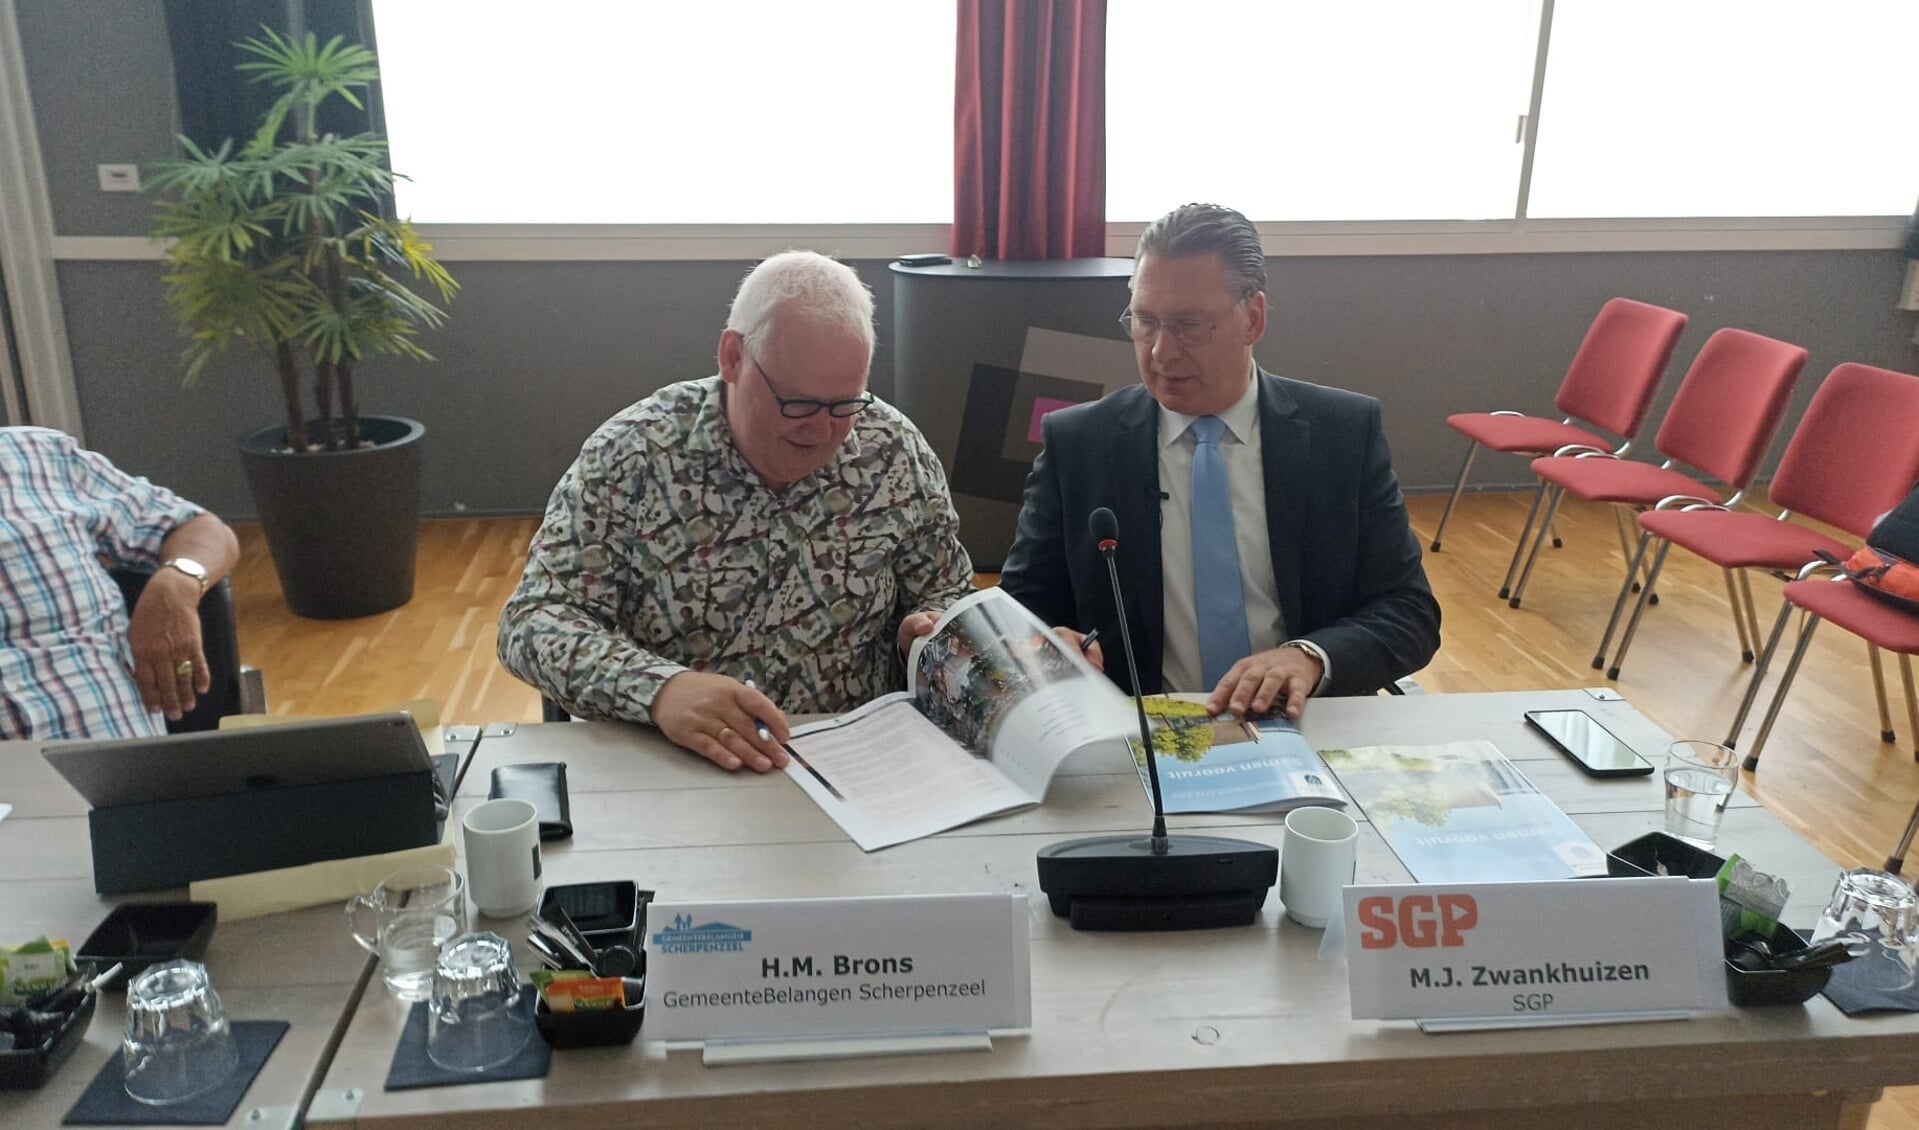  Henk Brons, fractievoorzitter van GemeenteBelangen Scherpenzeel en Maarten Zwankhuizen, fractievoorzitter van de SGP